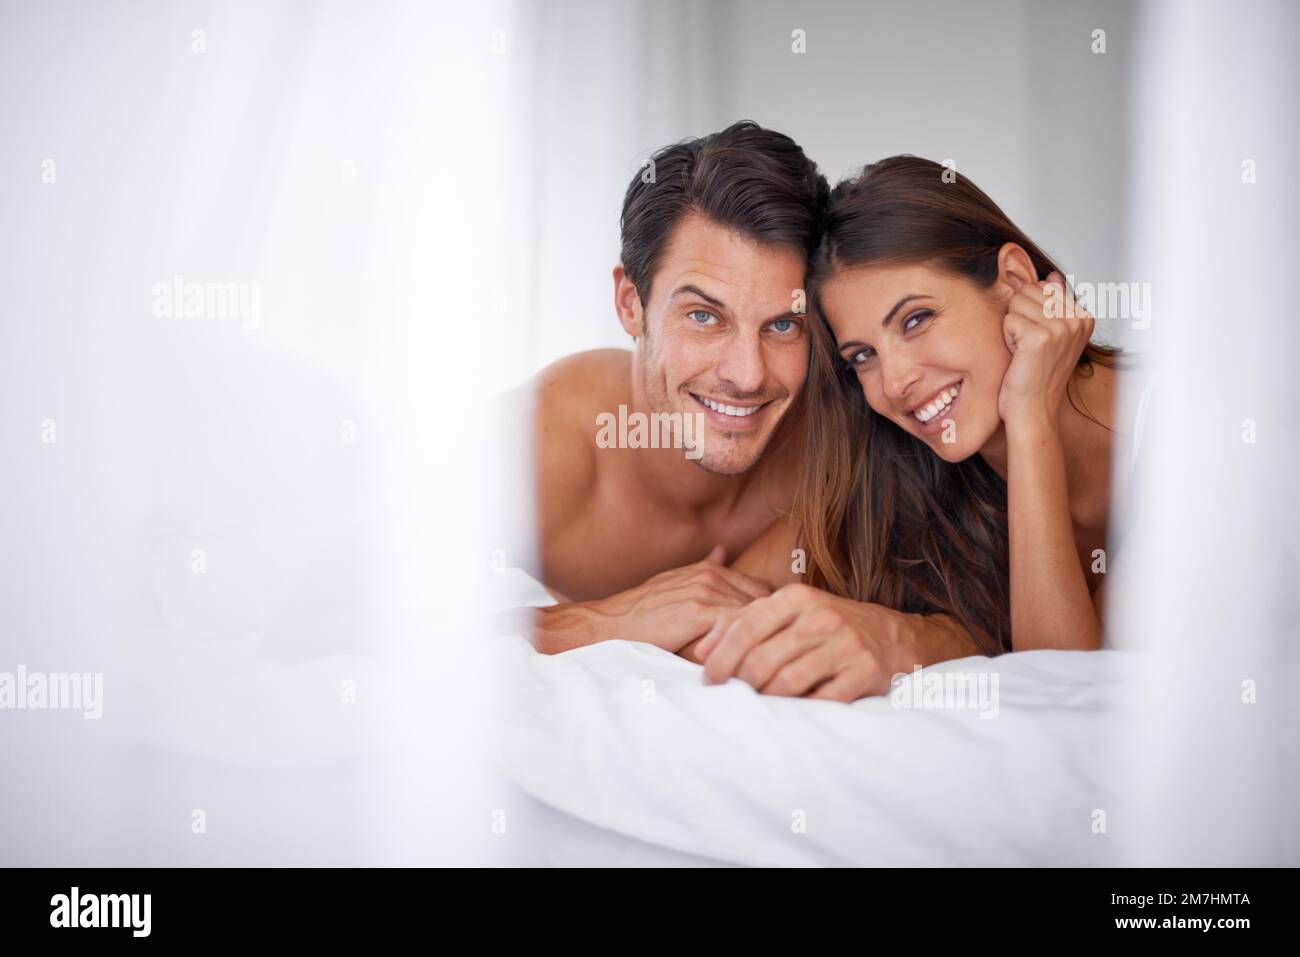 Warum in Urlaub gehen, wenn ich mit dir im Bett bleiben kann. Porträt eines wunderschönen jungen Paares, das im Bett liegt. Stockfoto